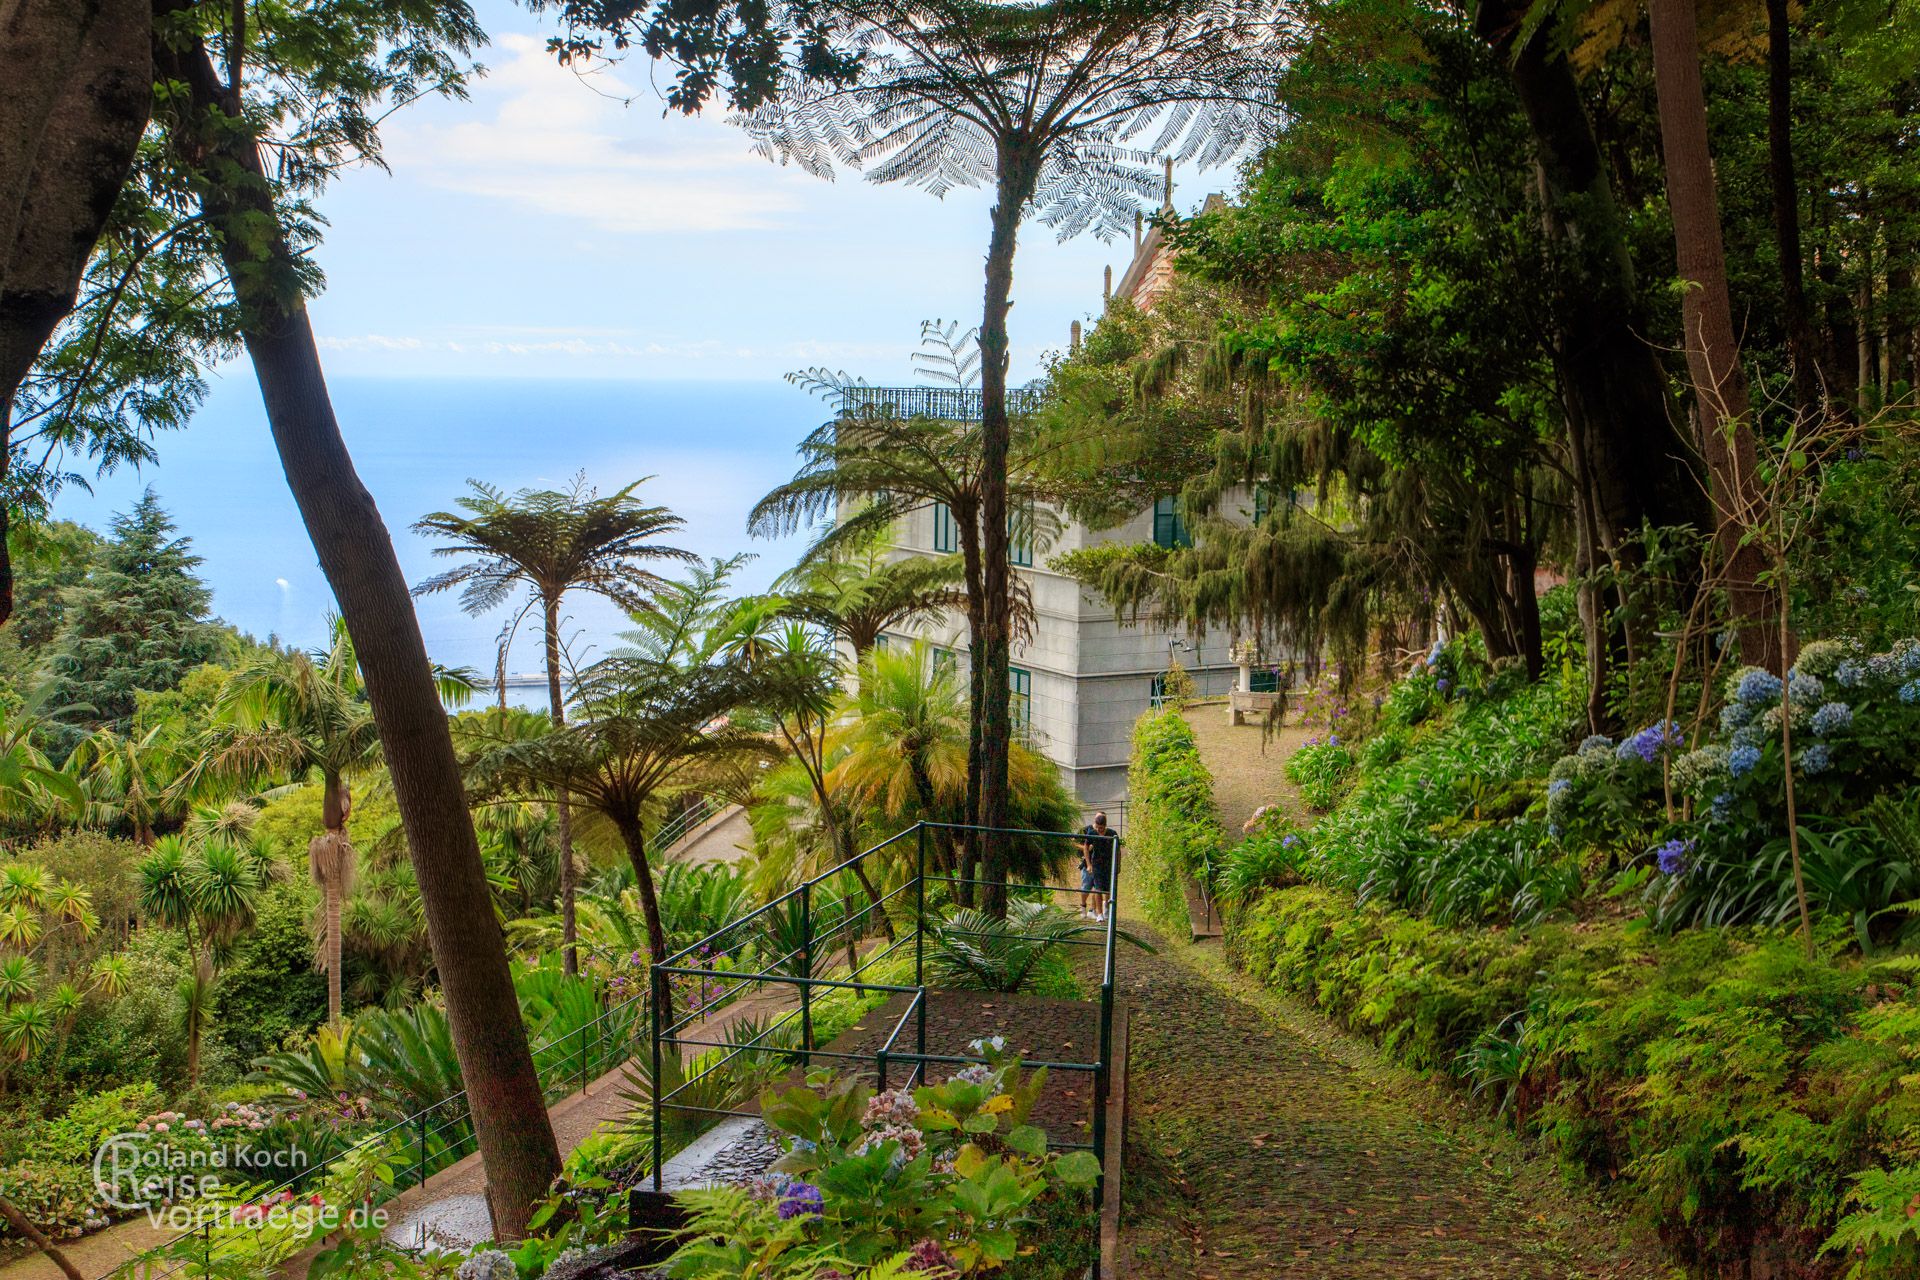 Madeira - Jardim Tropical Monte Palace oder Jardim Japonese